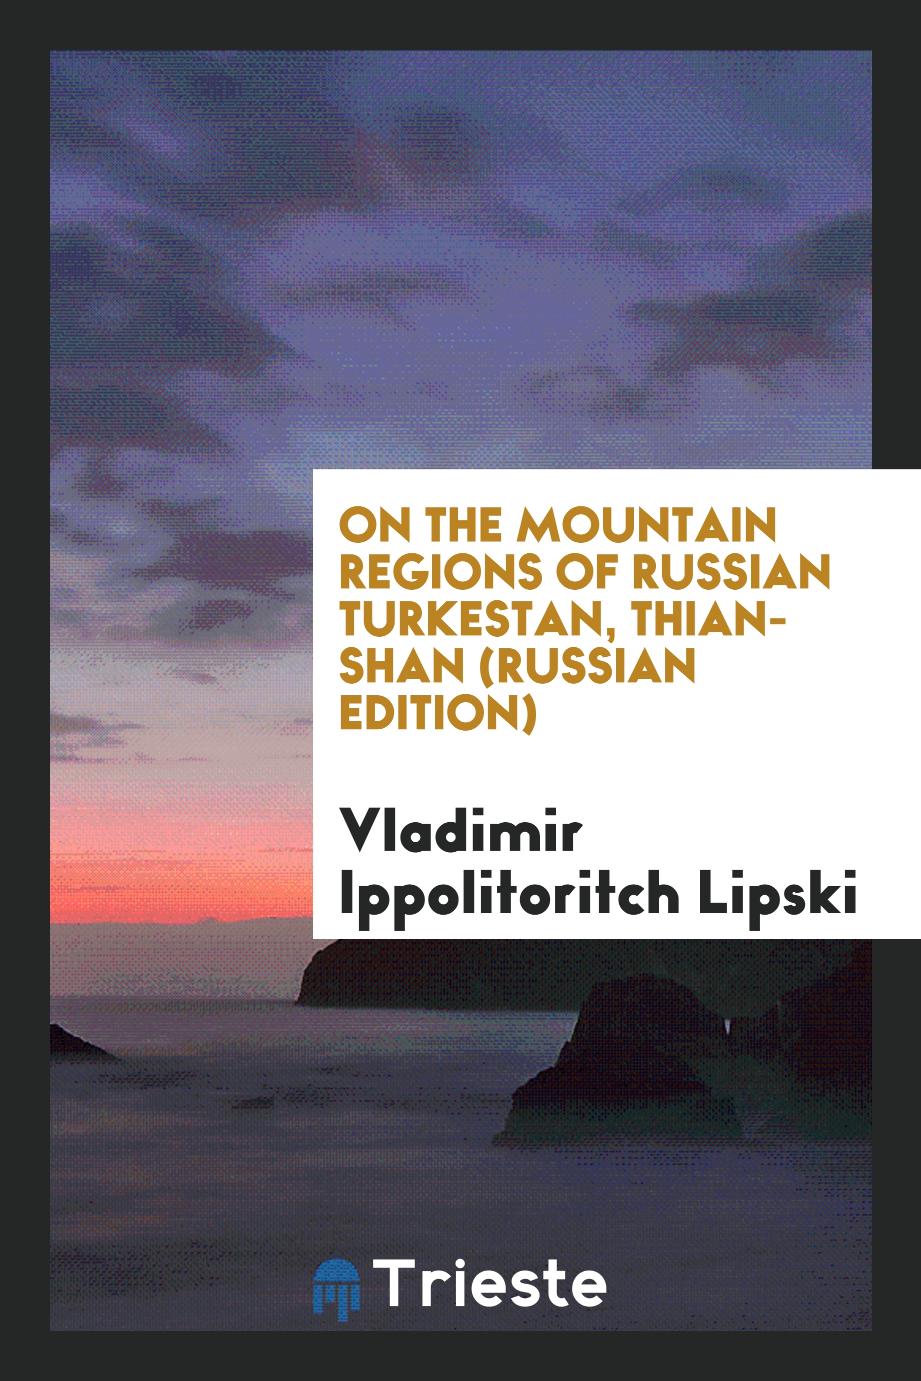 On the Mountain Regions of Russian Turkestan, Thian-Shan (Russian Edition)